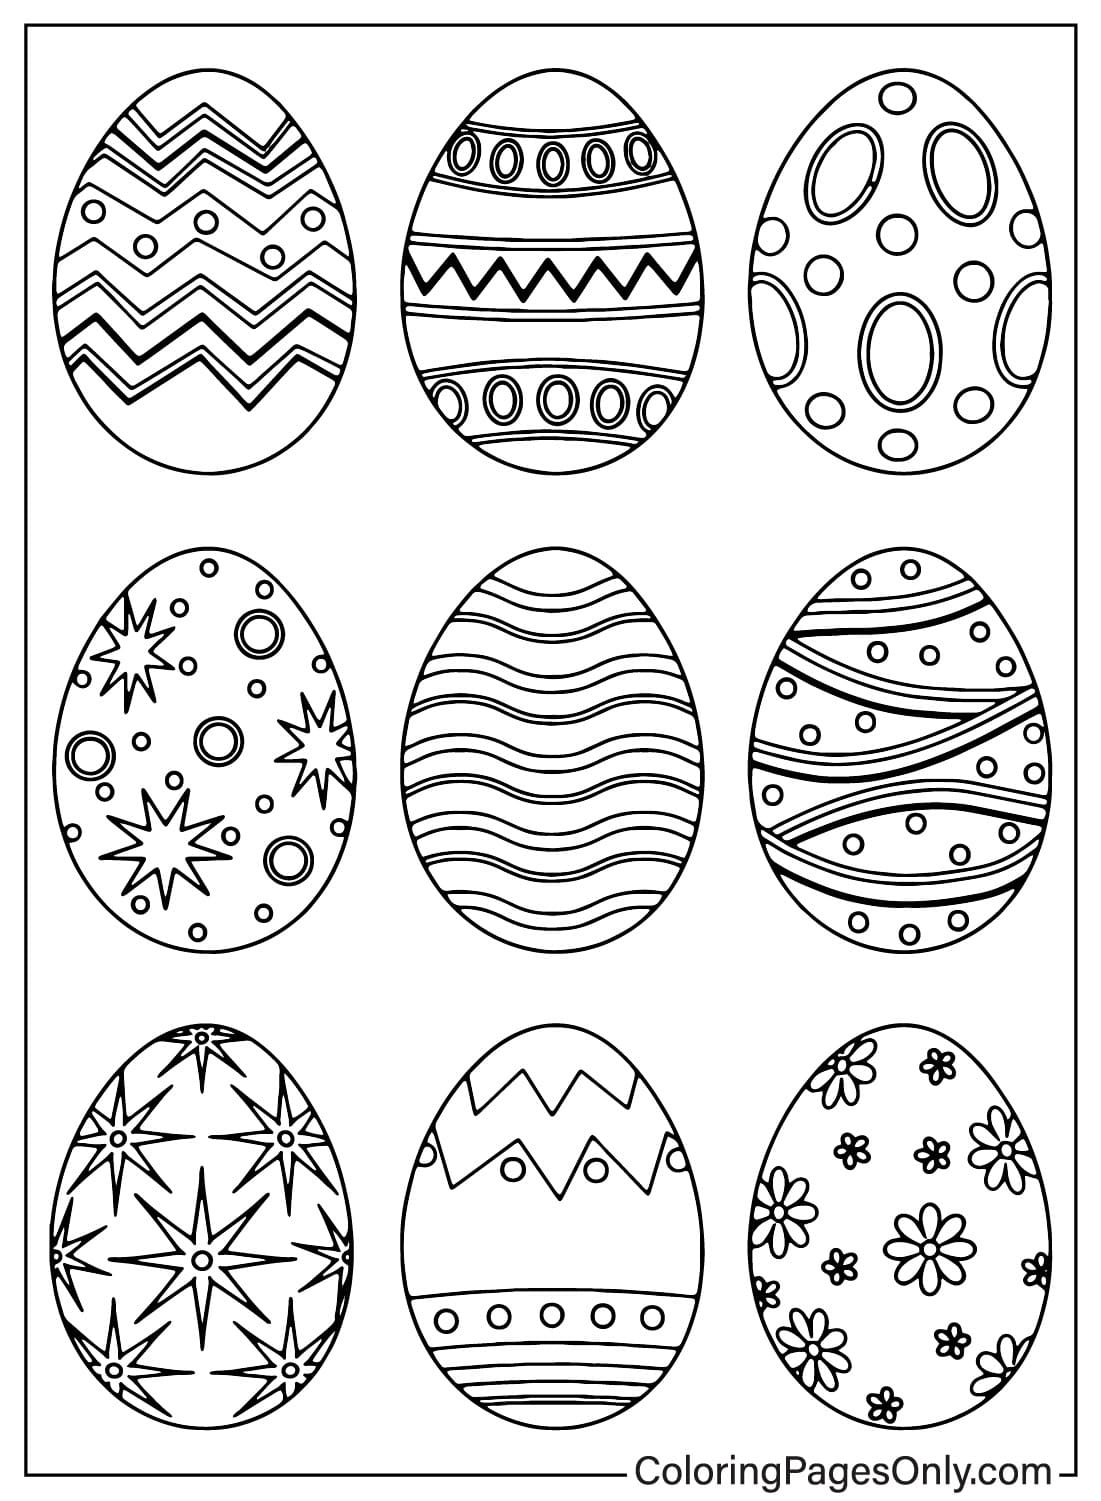 Disegni da colorare di uova di Pasqua da stampare